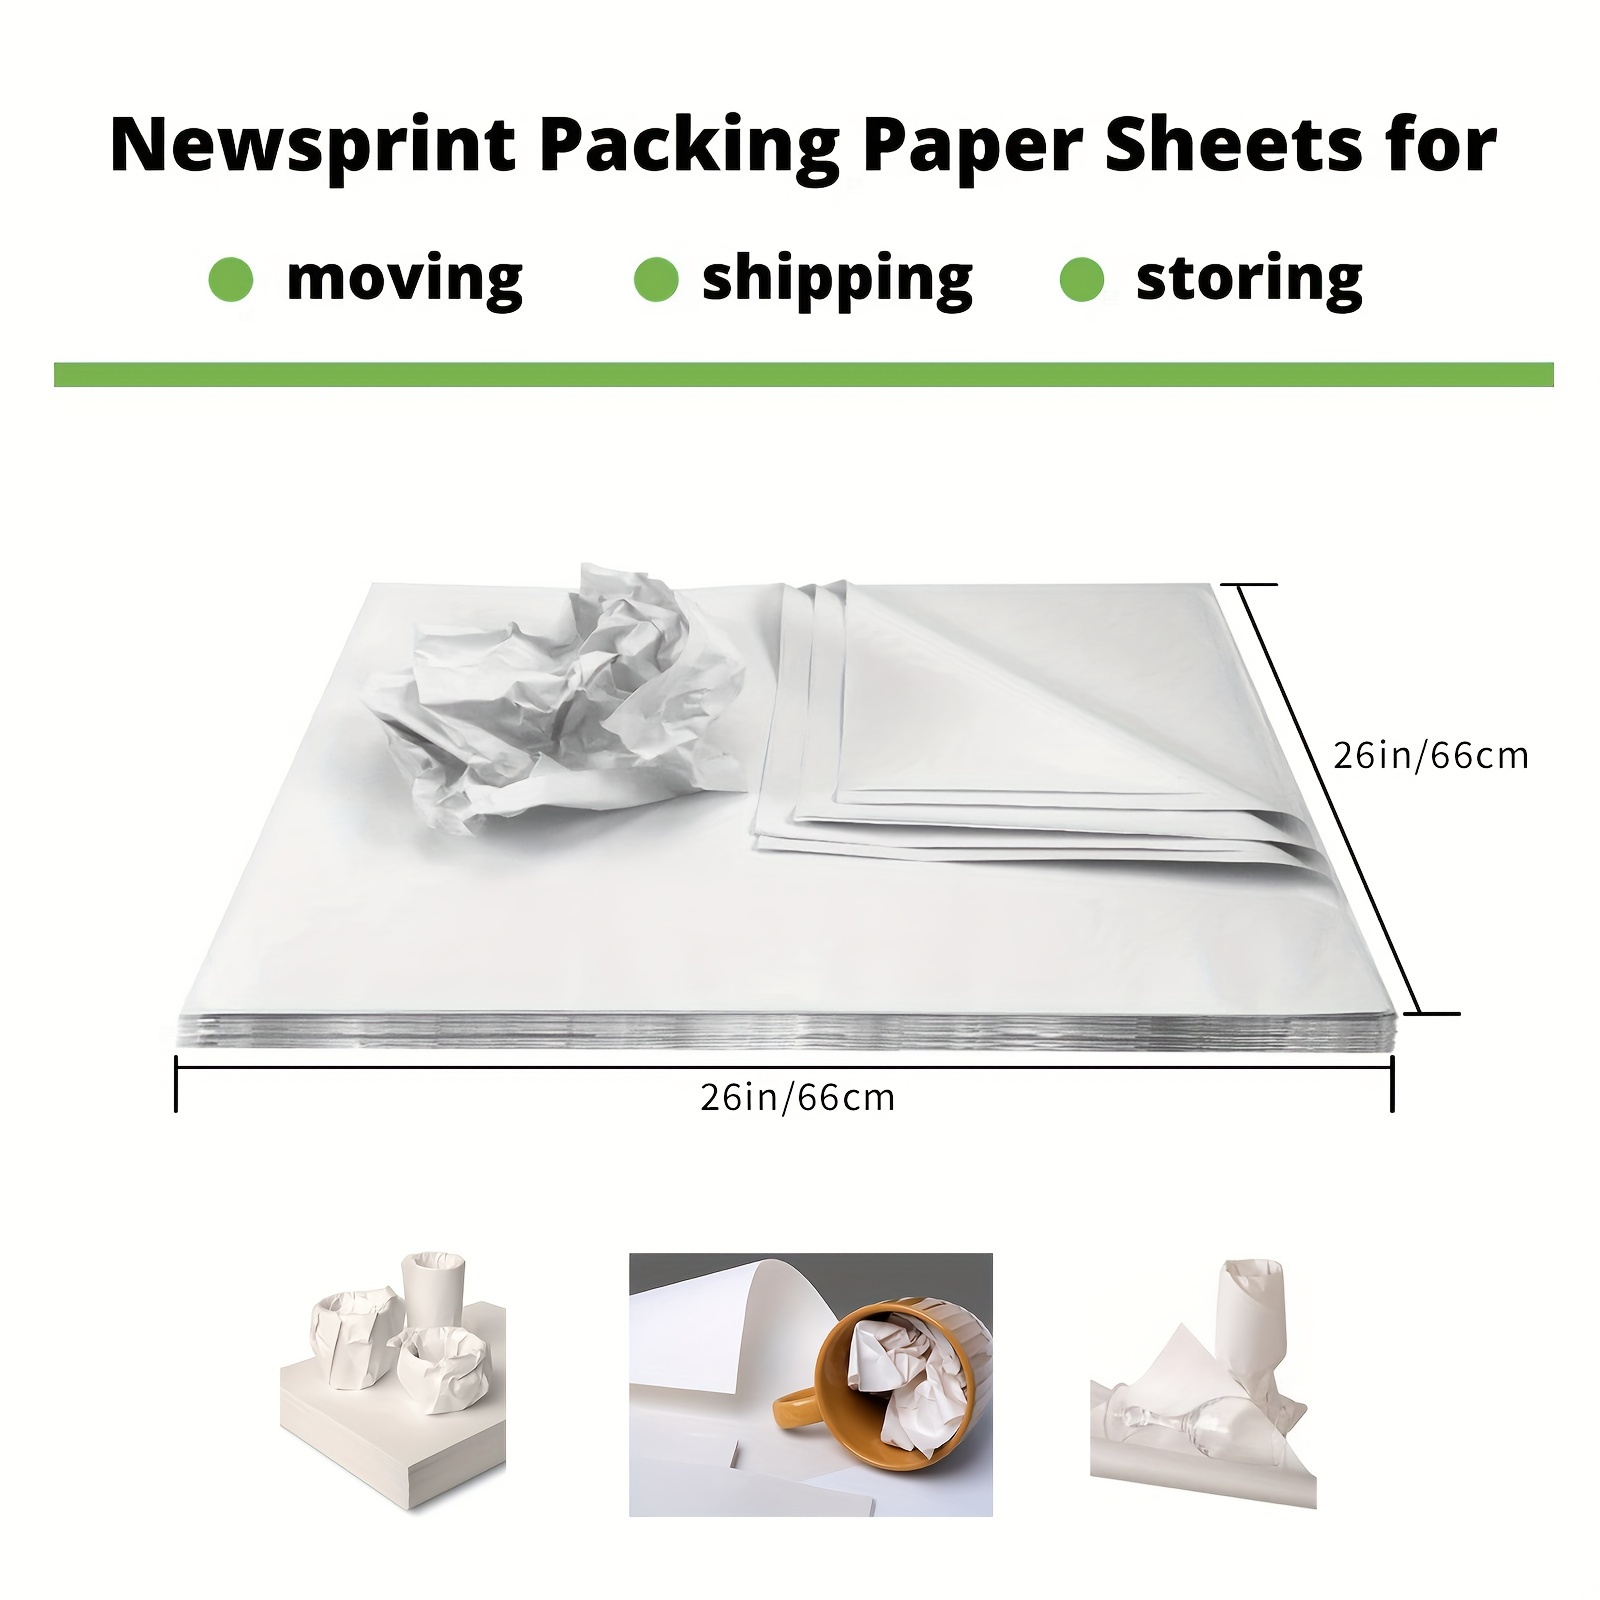 Newsprint Packing Sheet